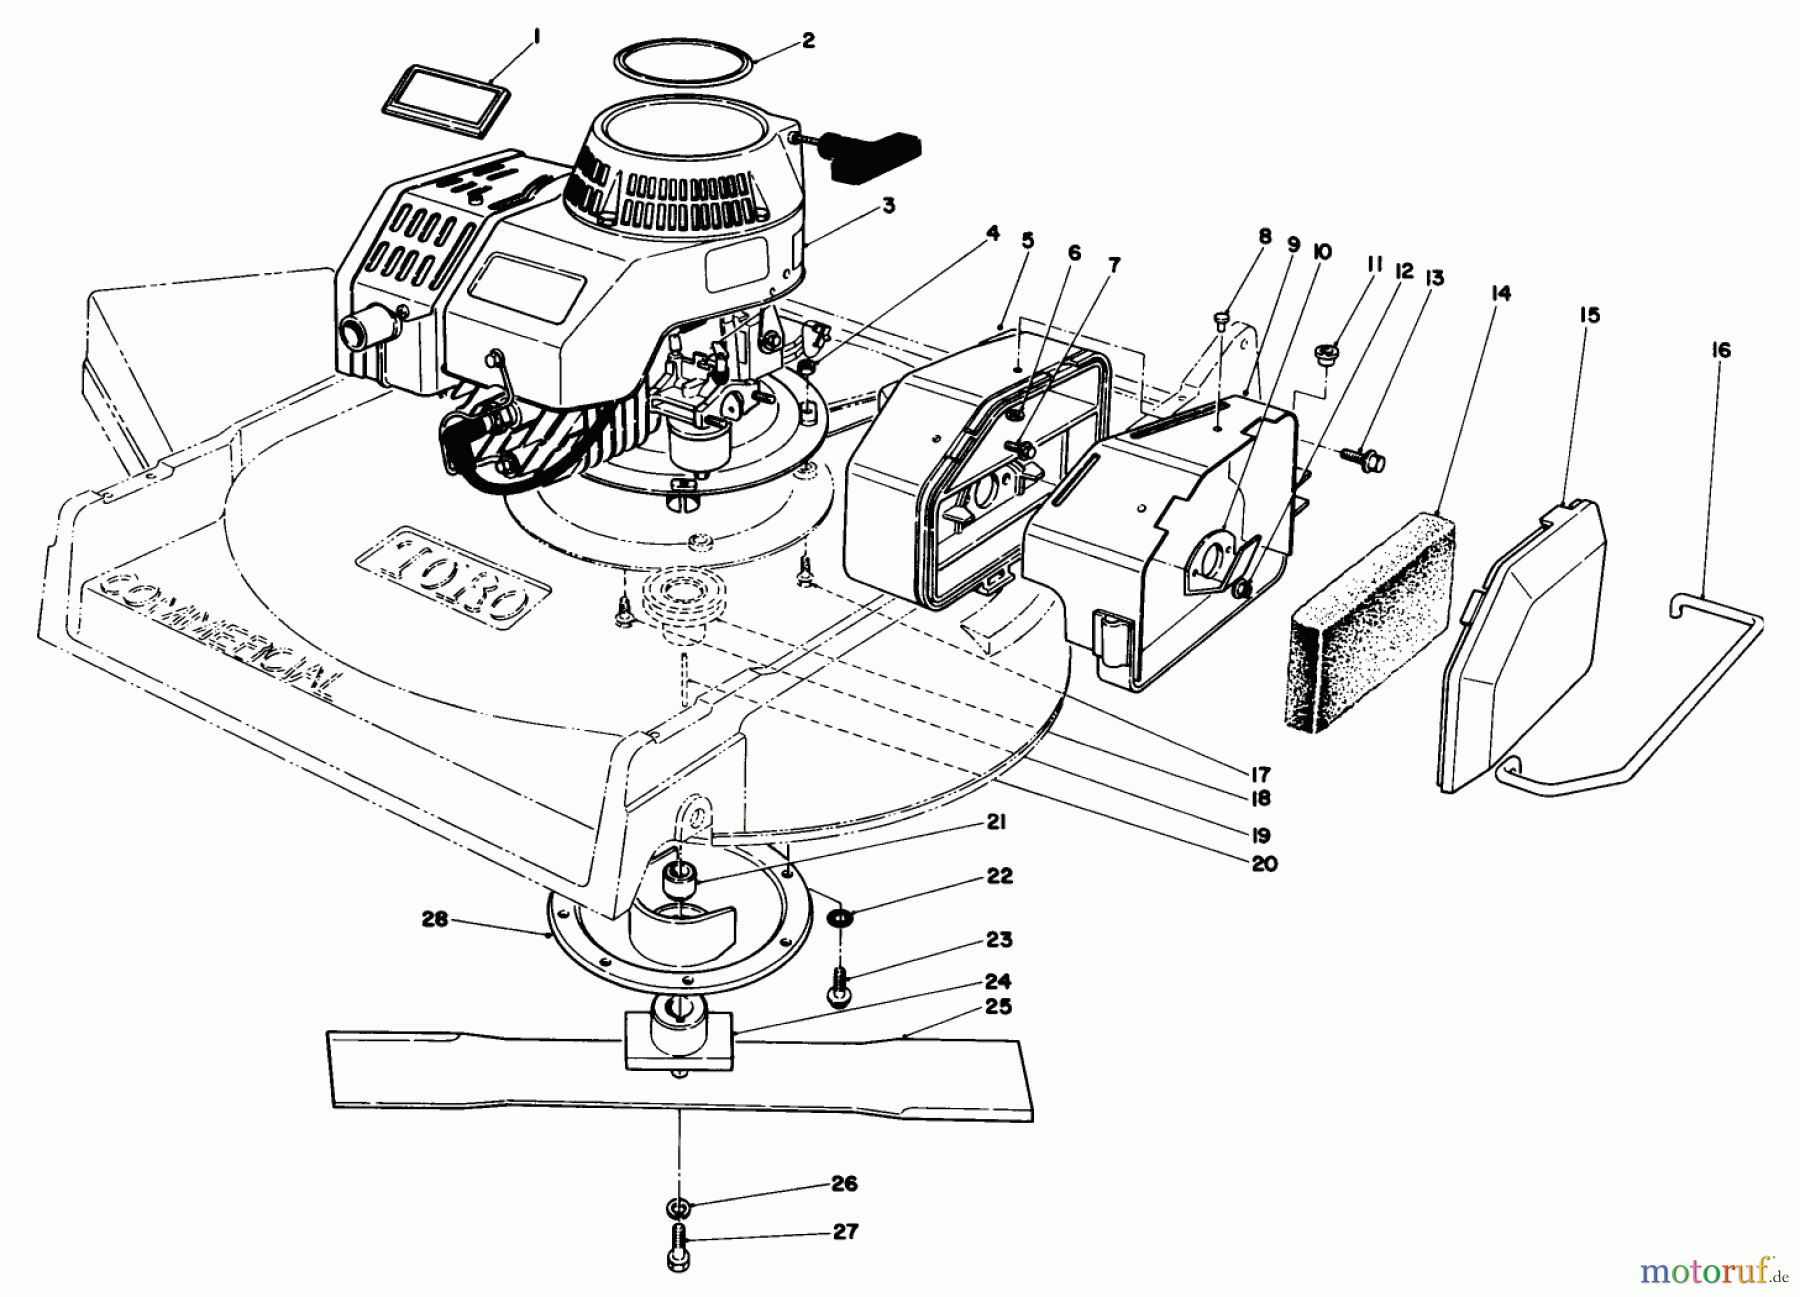  Toro Neu Mowers, Walk-Behind Seite 2 22700C - Toro Lawnmower, 1988 (8000001-8999999) ENGINE ASSEMBLY